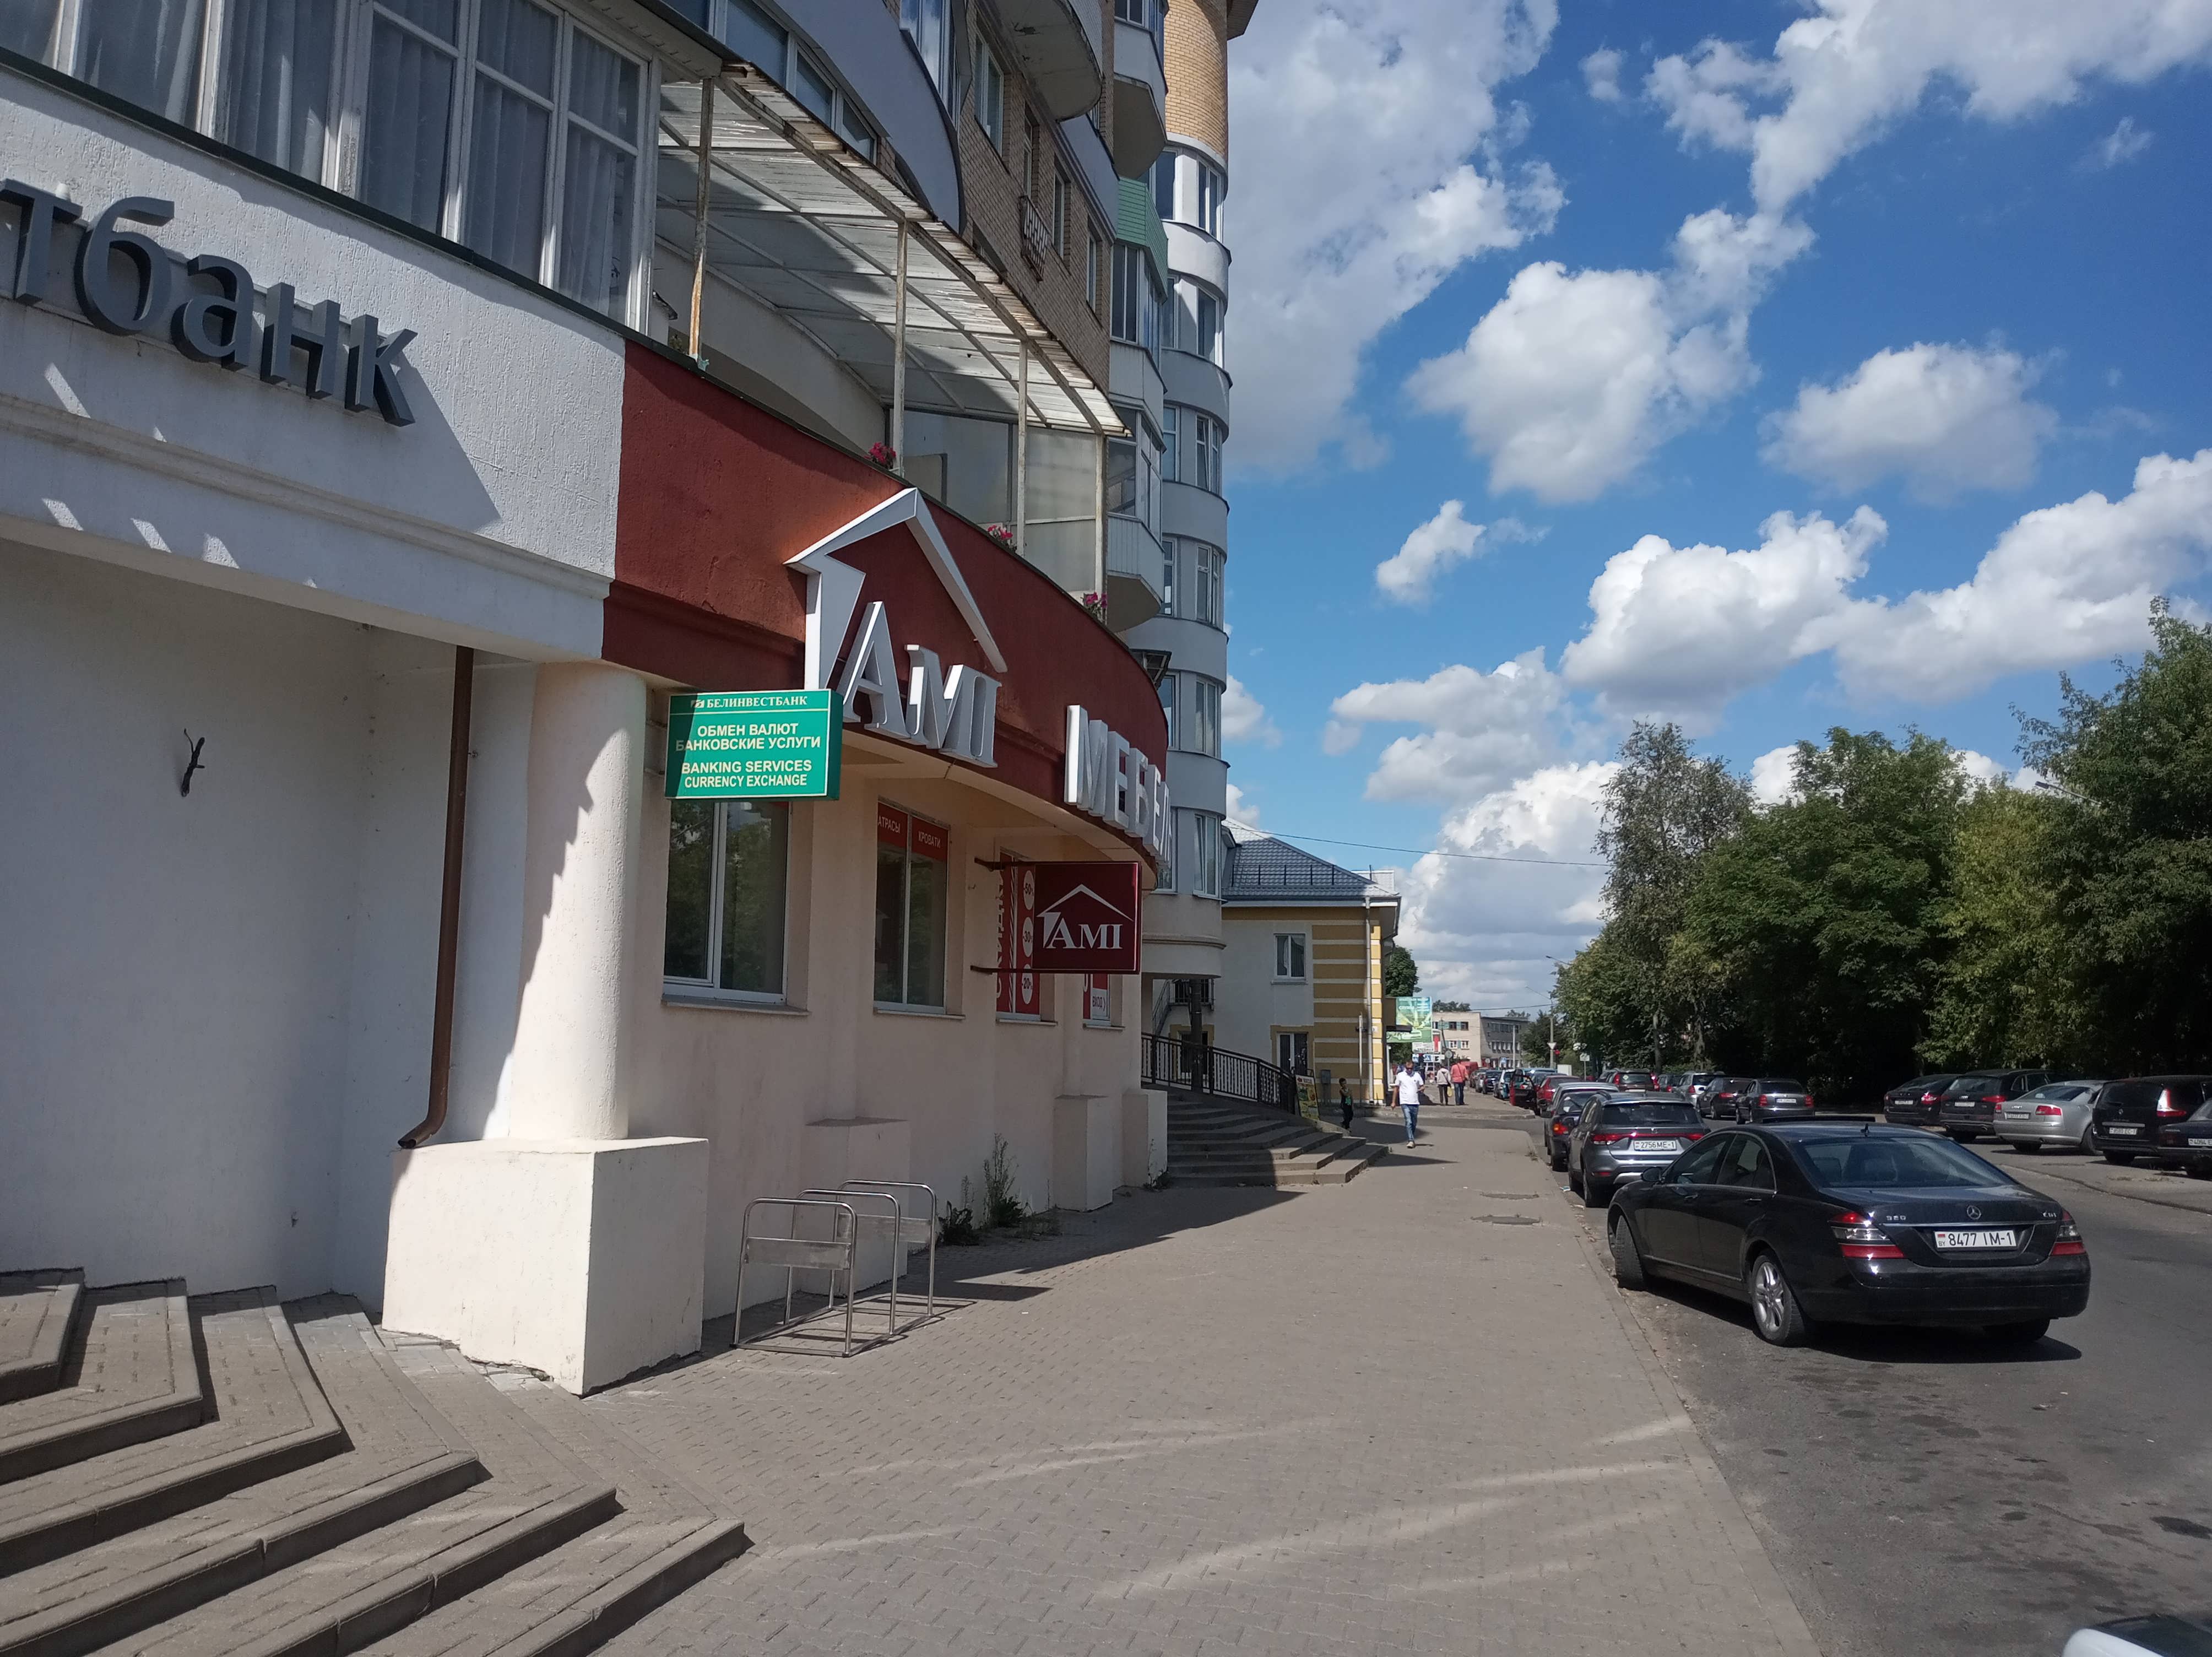 Торговое помещение 409м² в центре города по адресу г.Барановичи, ул.Димитрова, 15-72. Фасад. Тротуар